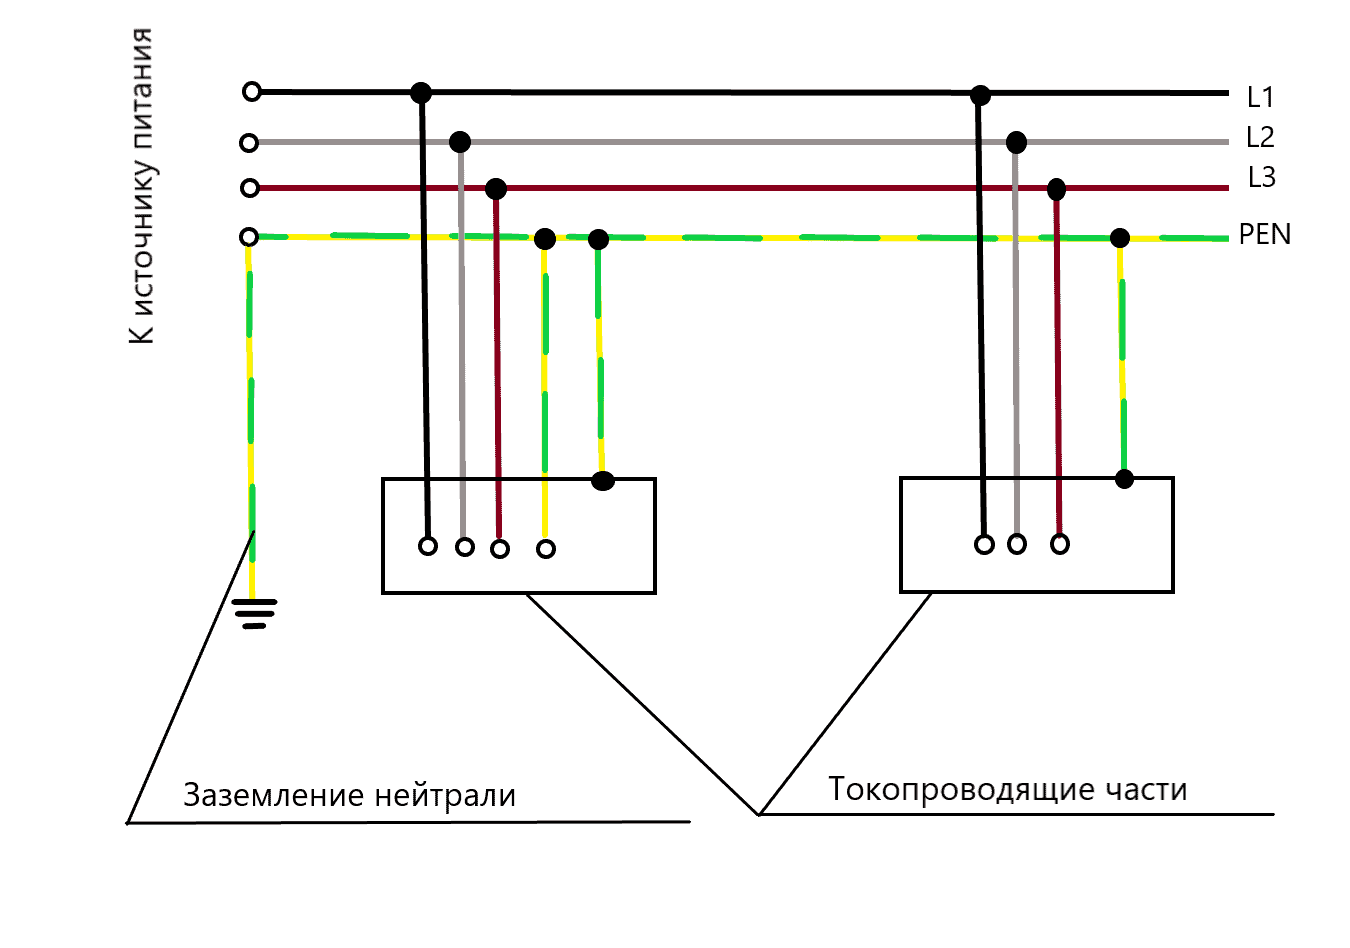 Схемы заземления трехфазной сети. Схема системы заземления TN-C. TN-C-S система заземления схема. Схема заземления TN-C-S 3 фазная. Тип заземления TN-C-S схема подключения.